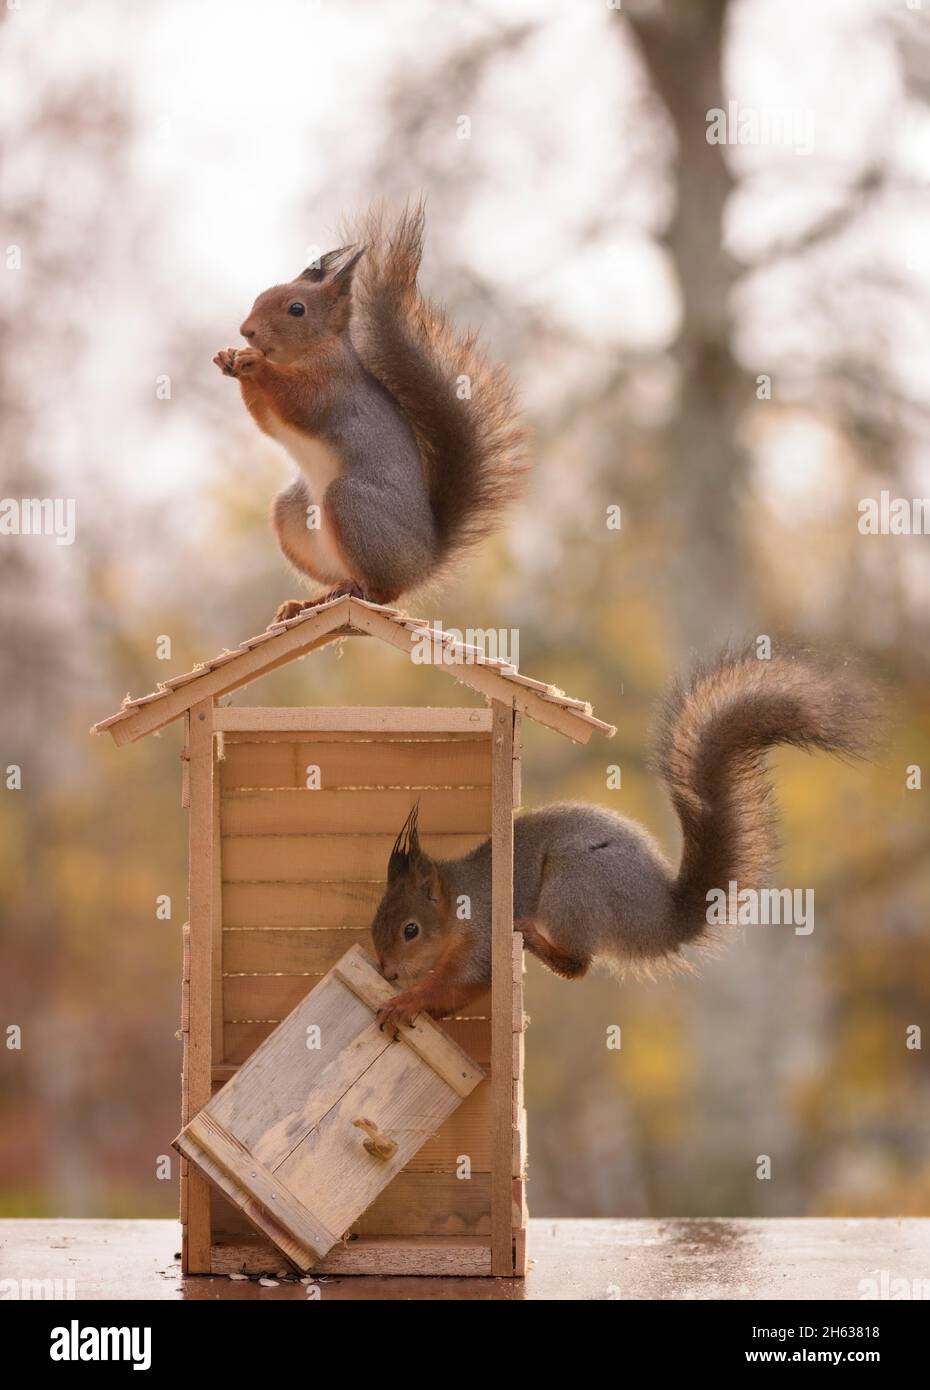 Due gli scoiattoli rossi con una porta la costruzione di un wc Foto Stock